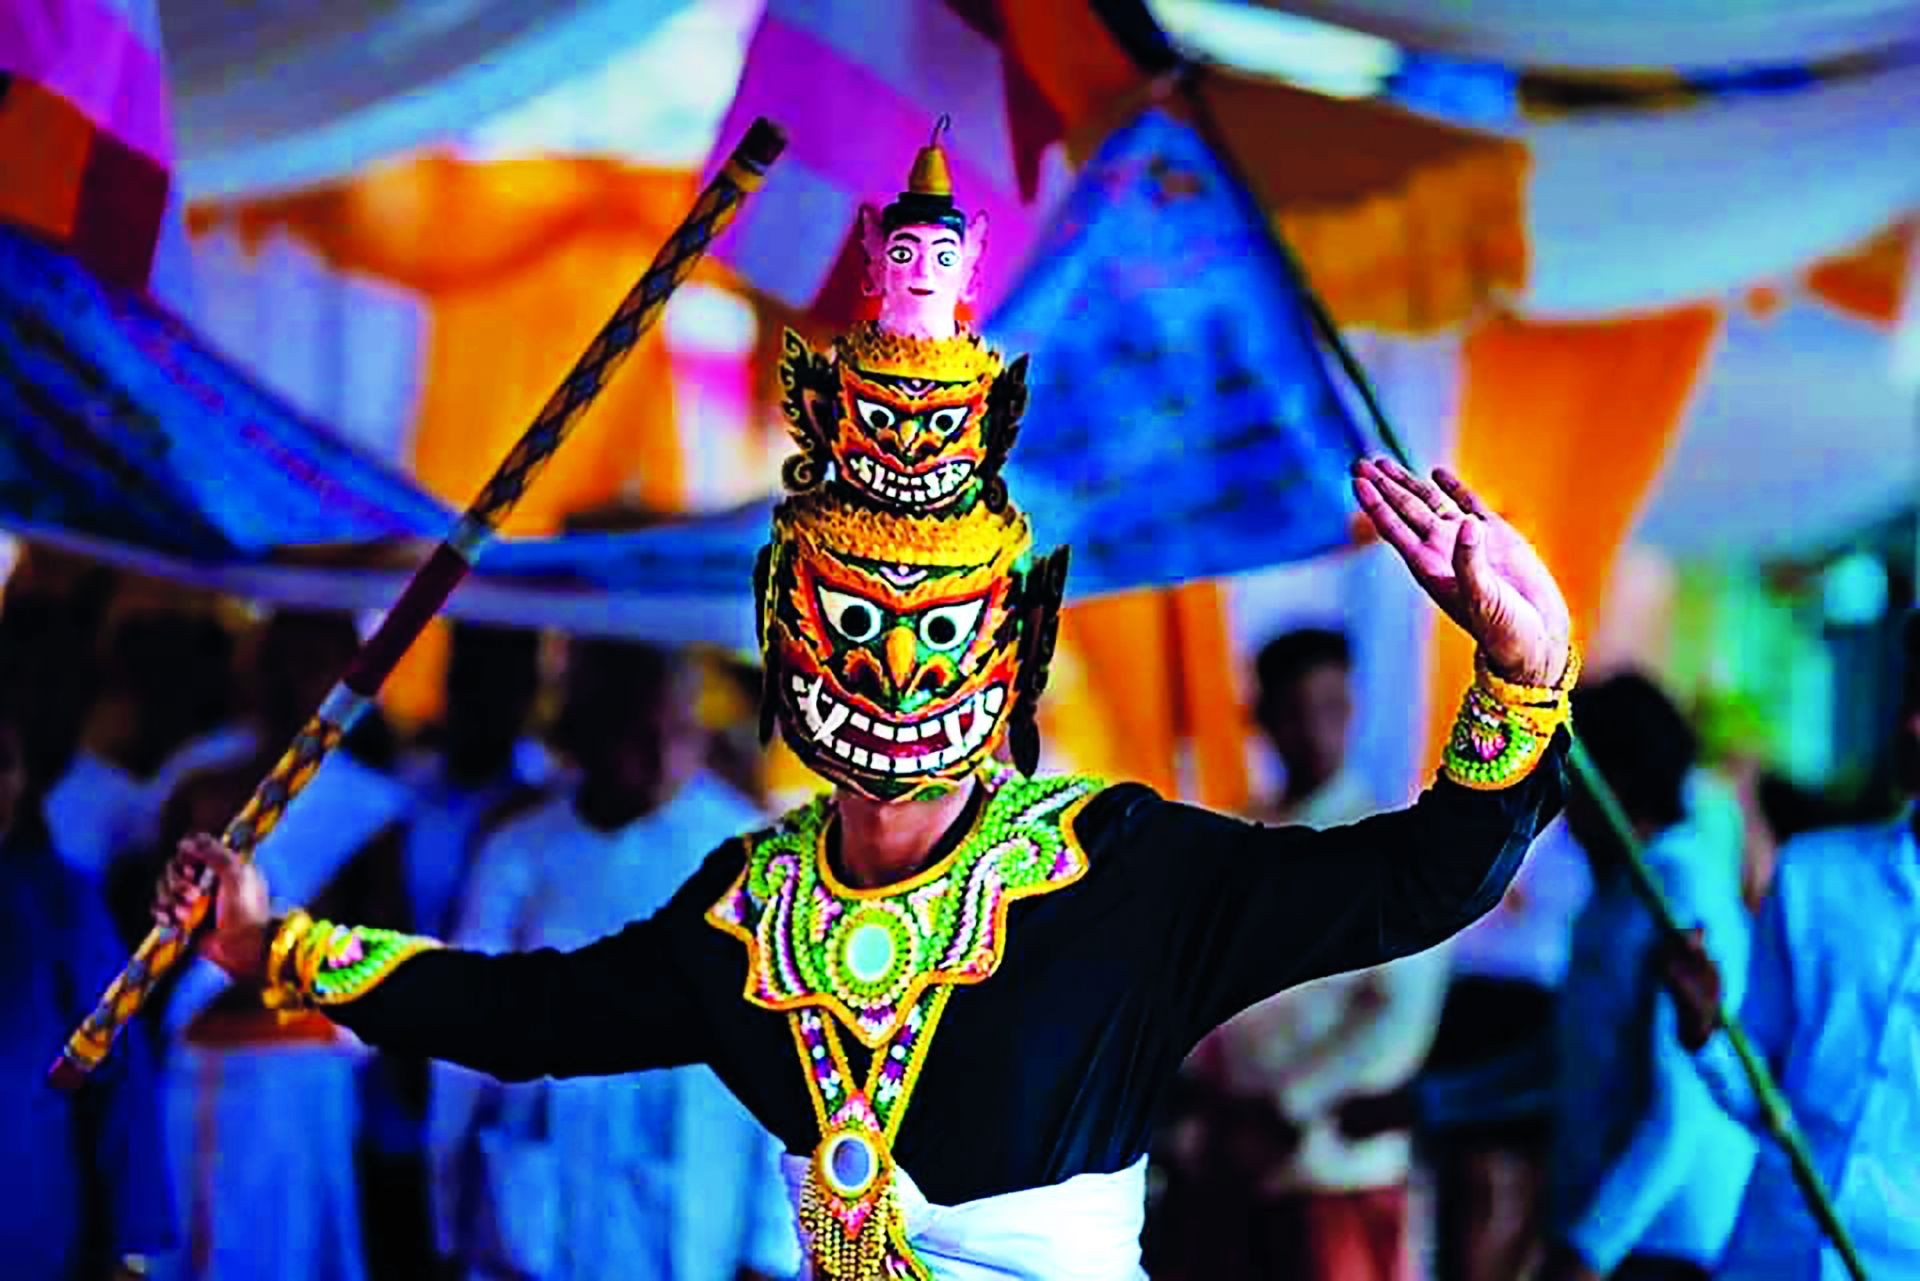 Múa chằn - Với những động tác uyển chuyển của người diễn và những bản nhạc đặc sắc, múa chằn là một trong những điệu nhảy truyền thống đầy sức sống. Hãy cùng xem hình ảnh liên quan để thấy rõ vẻ đẹp của múa chằn và cảm nhận được nét độc đáo của văn hóa Việt.